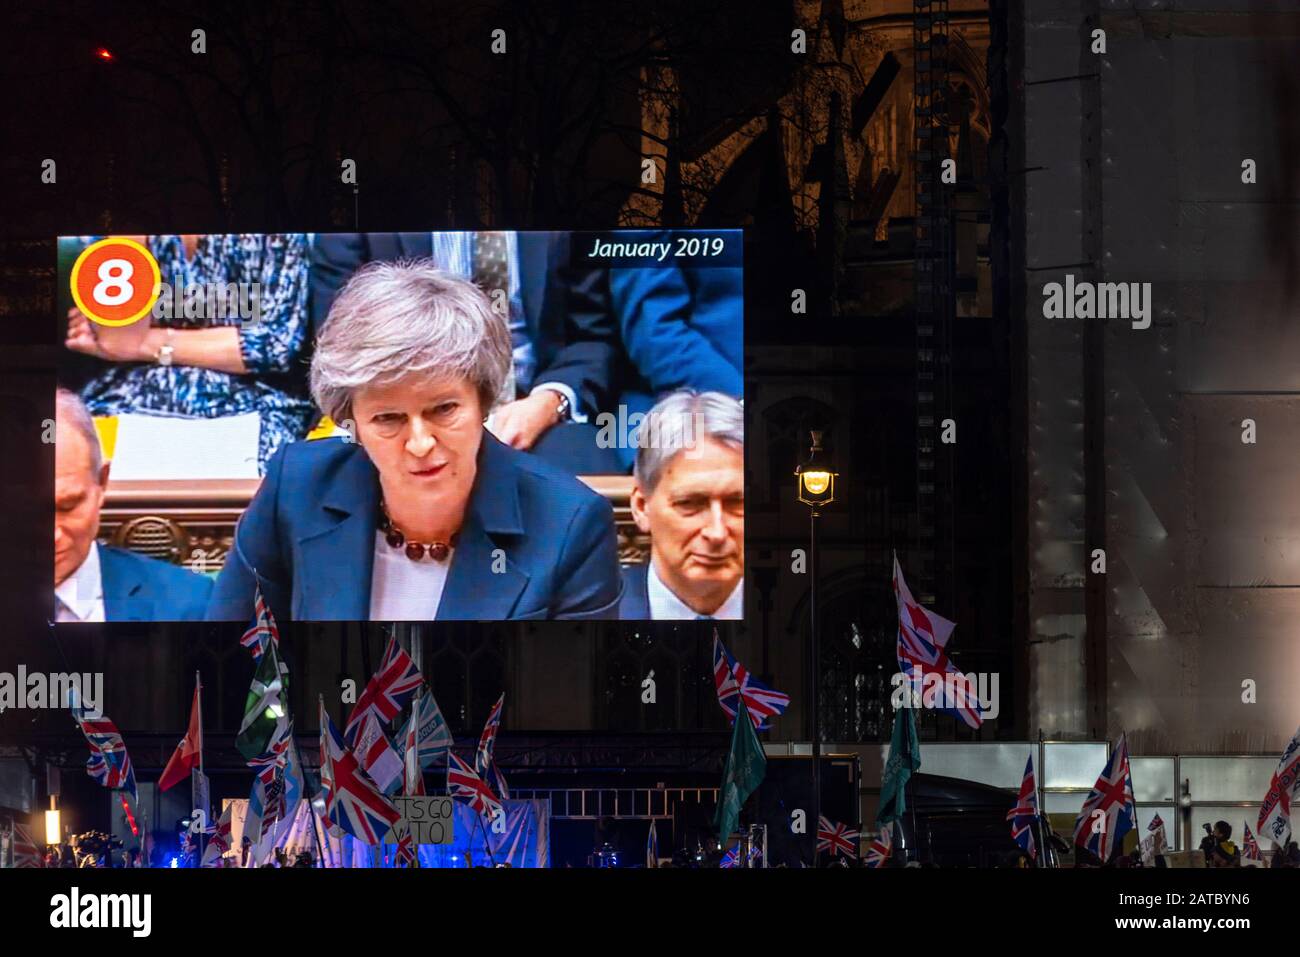 Aufnahme von Theresa May als Premierministerin auf der großen Leinwand bei der Feier auf dem Parliament Square am Brexit Day, 31. Januar 2020, London, Großbritannien Stockfoto